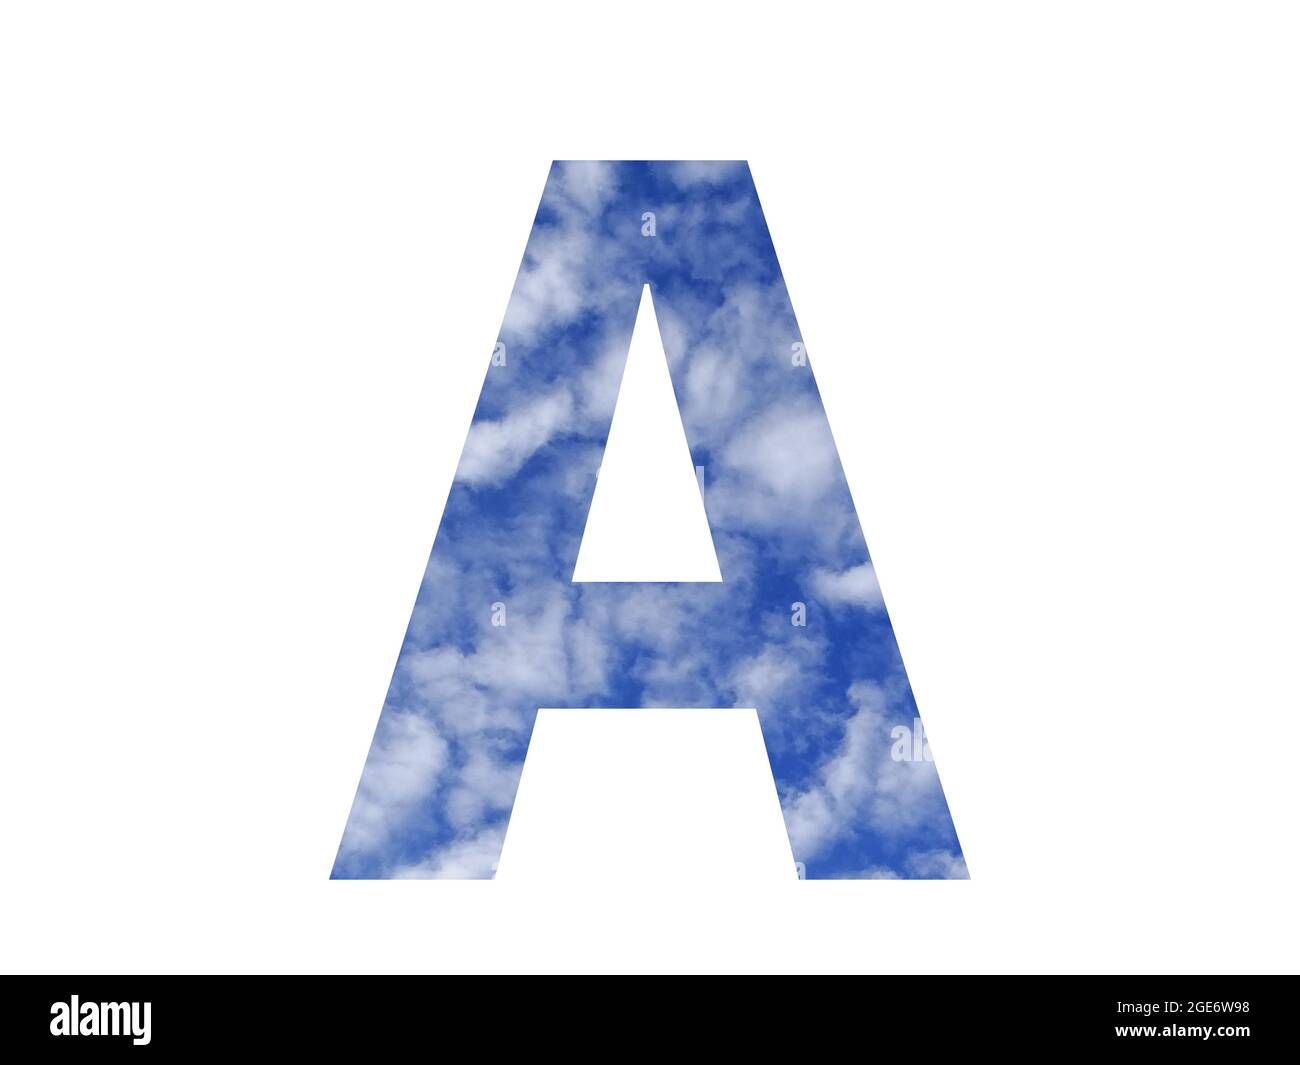 Lettera A dell'alfabeto fatta con cielo blu e nuvole bianche, isolata su sfondo bianco Foto Stock